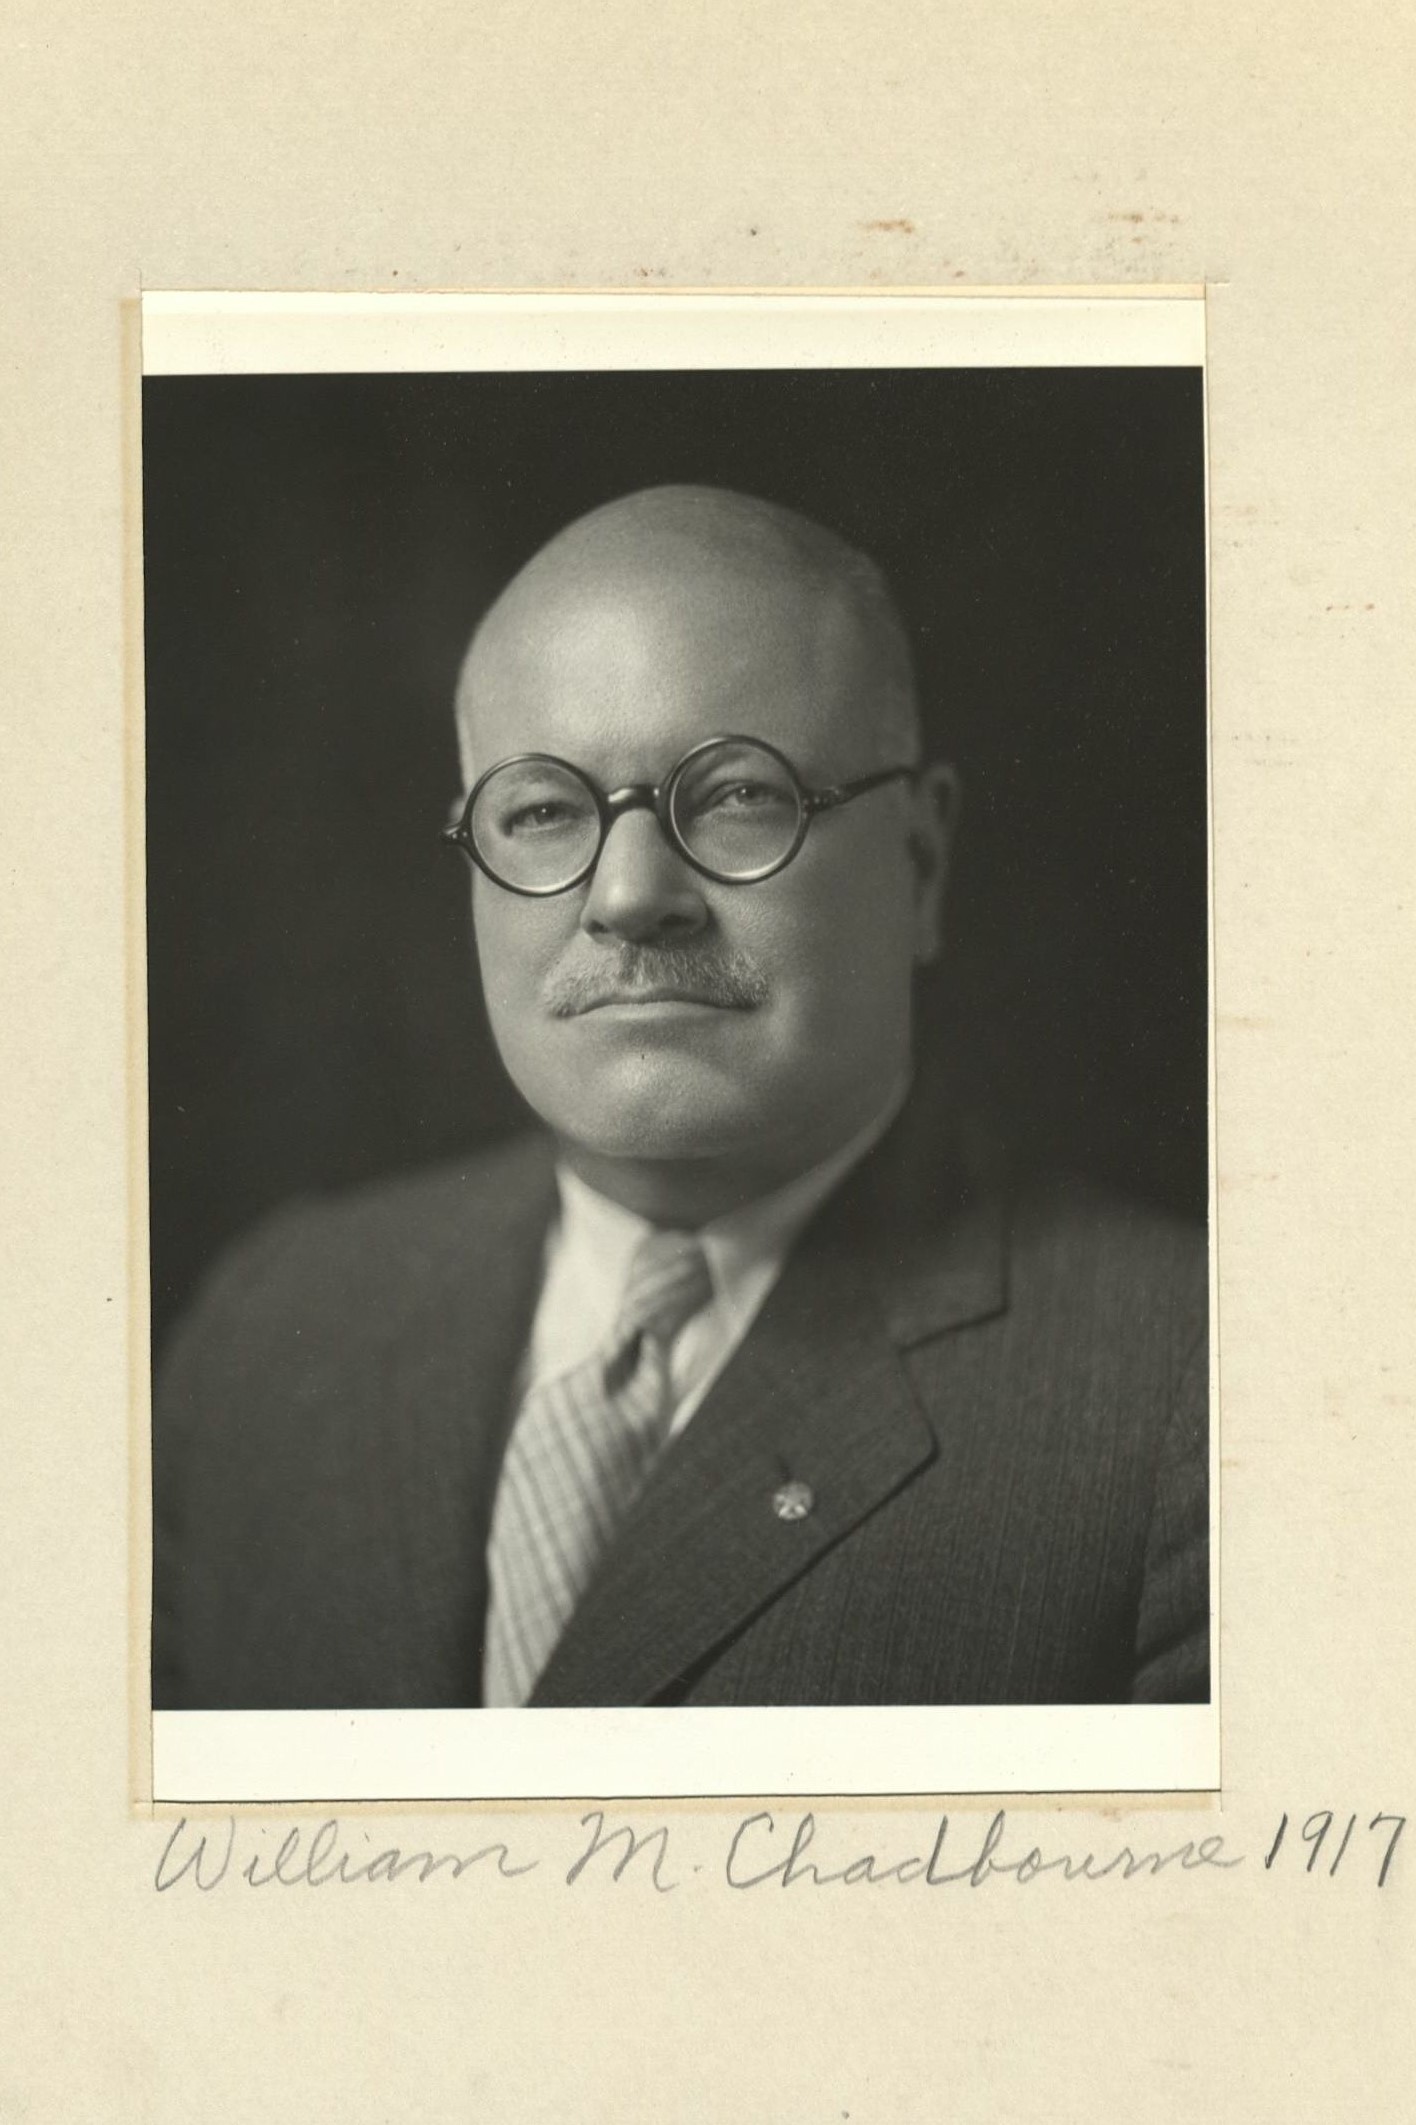 Member portrait of William M. Chadbourne